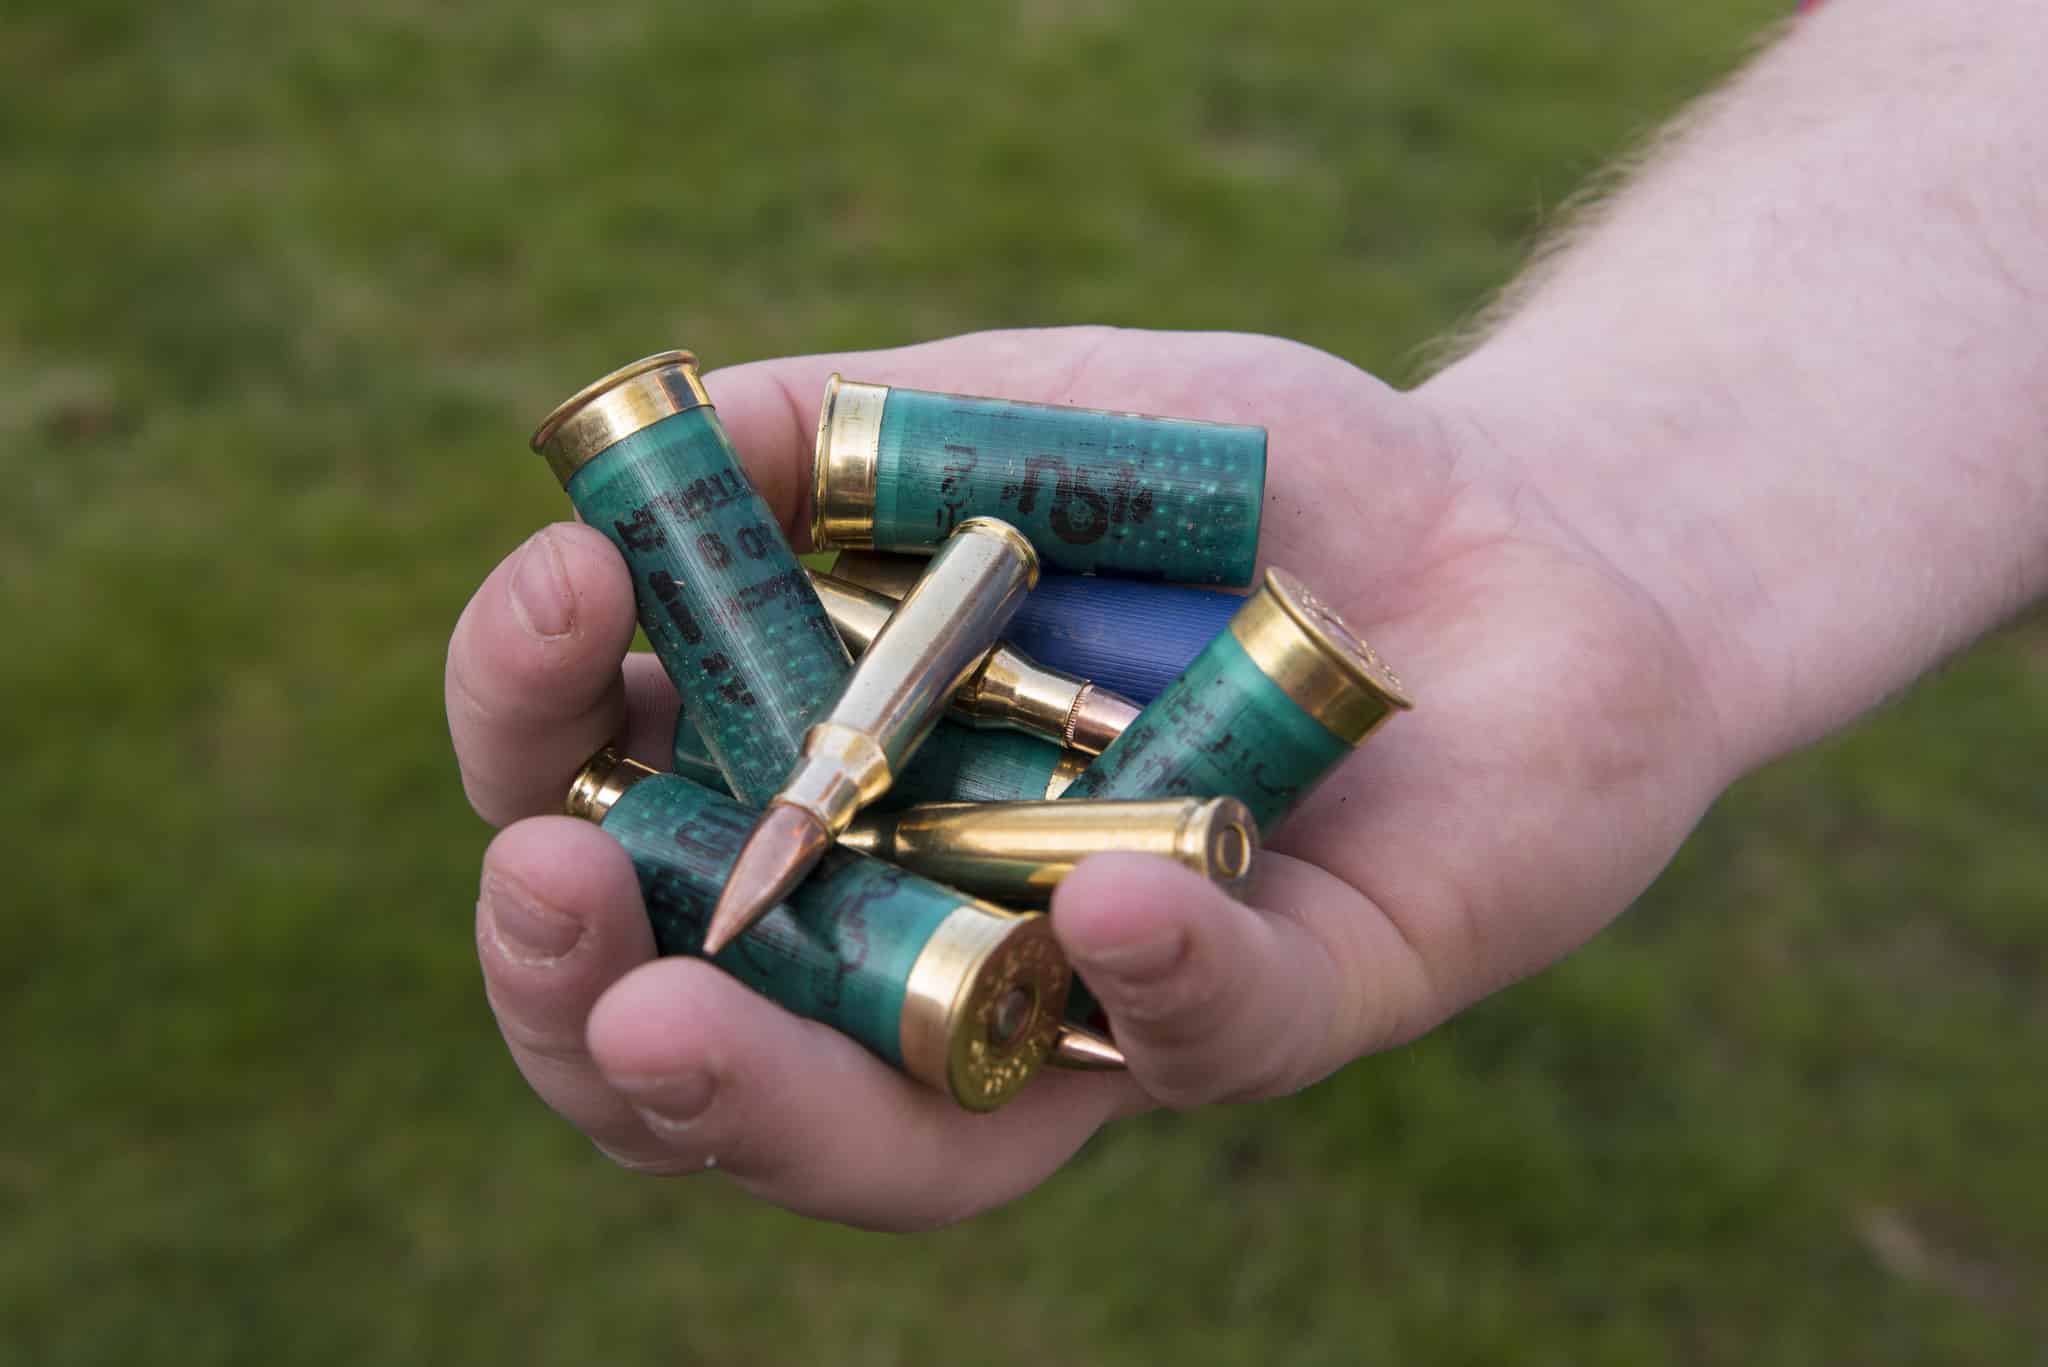 Ett litet slarv med ammunition ledde till att Polisen omhändertog jägarens vapen.